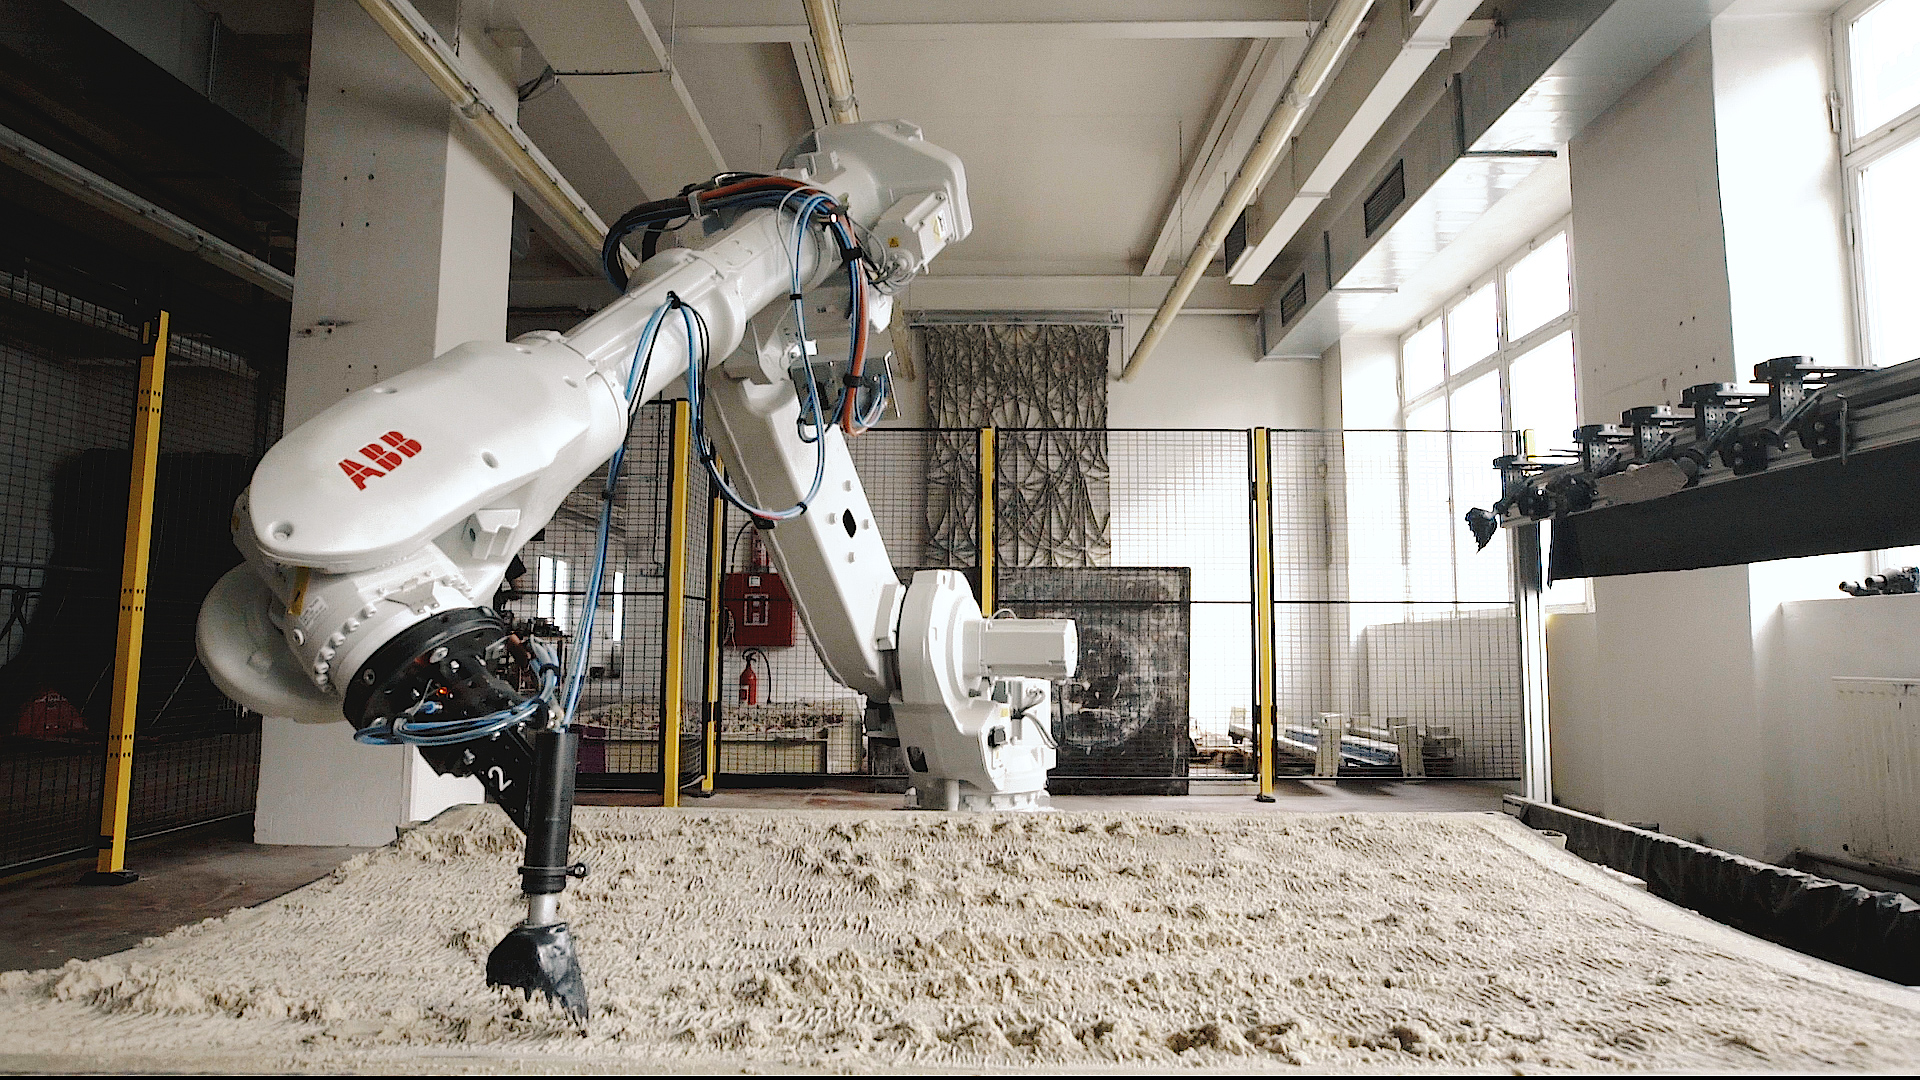 Výtvarník a robot proměnili výdech v umělecké dílo